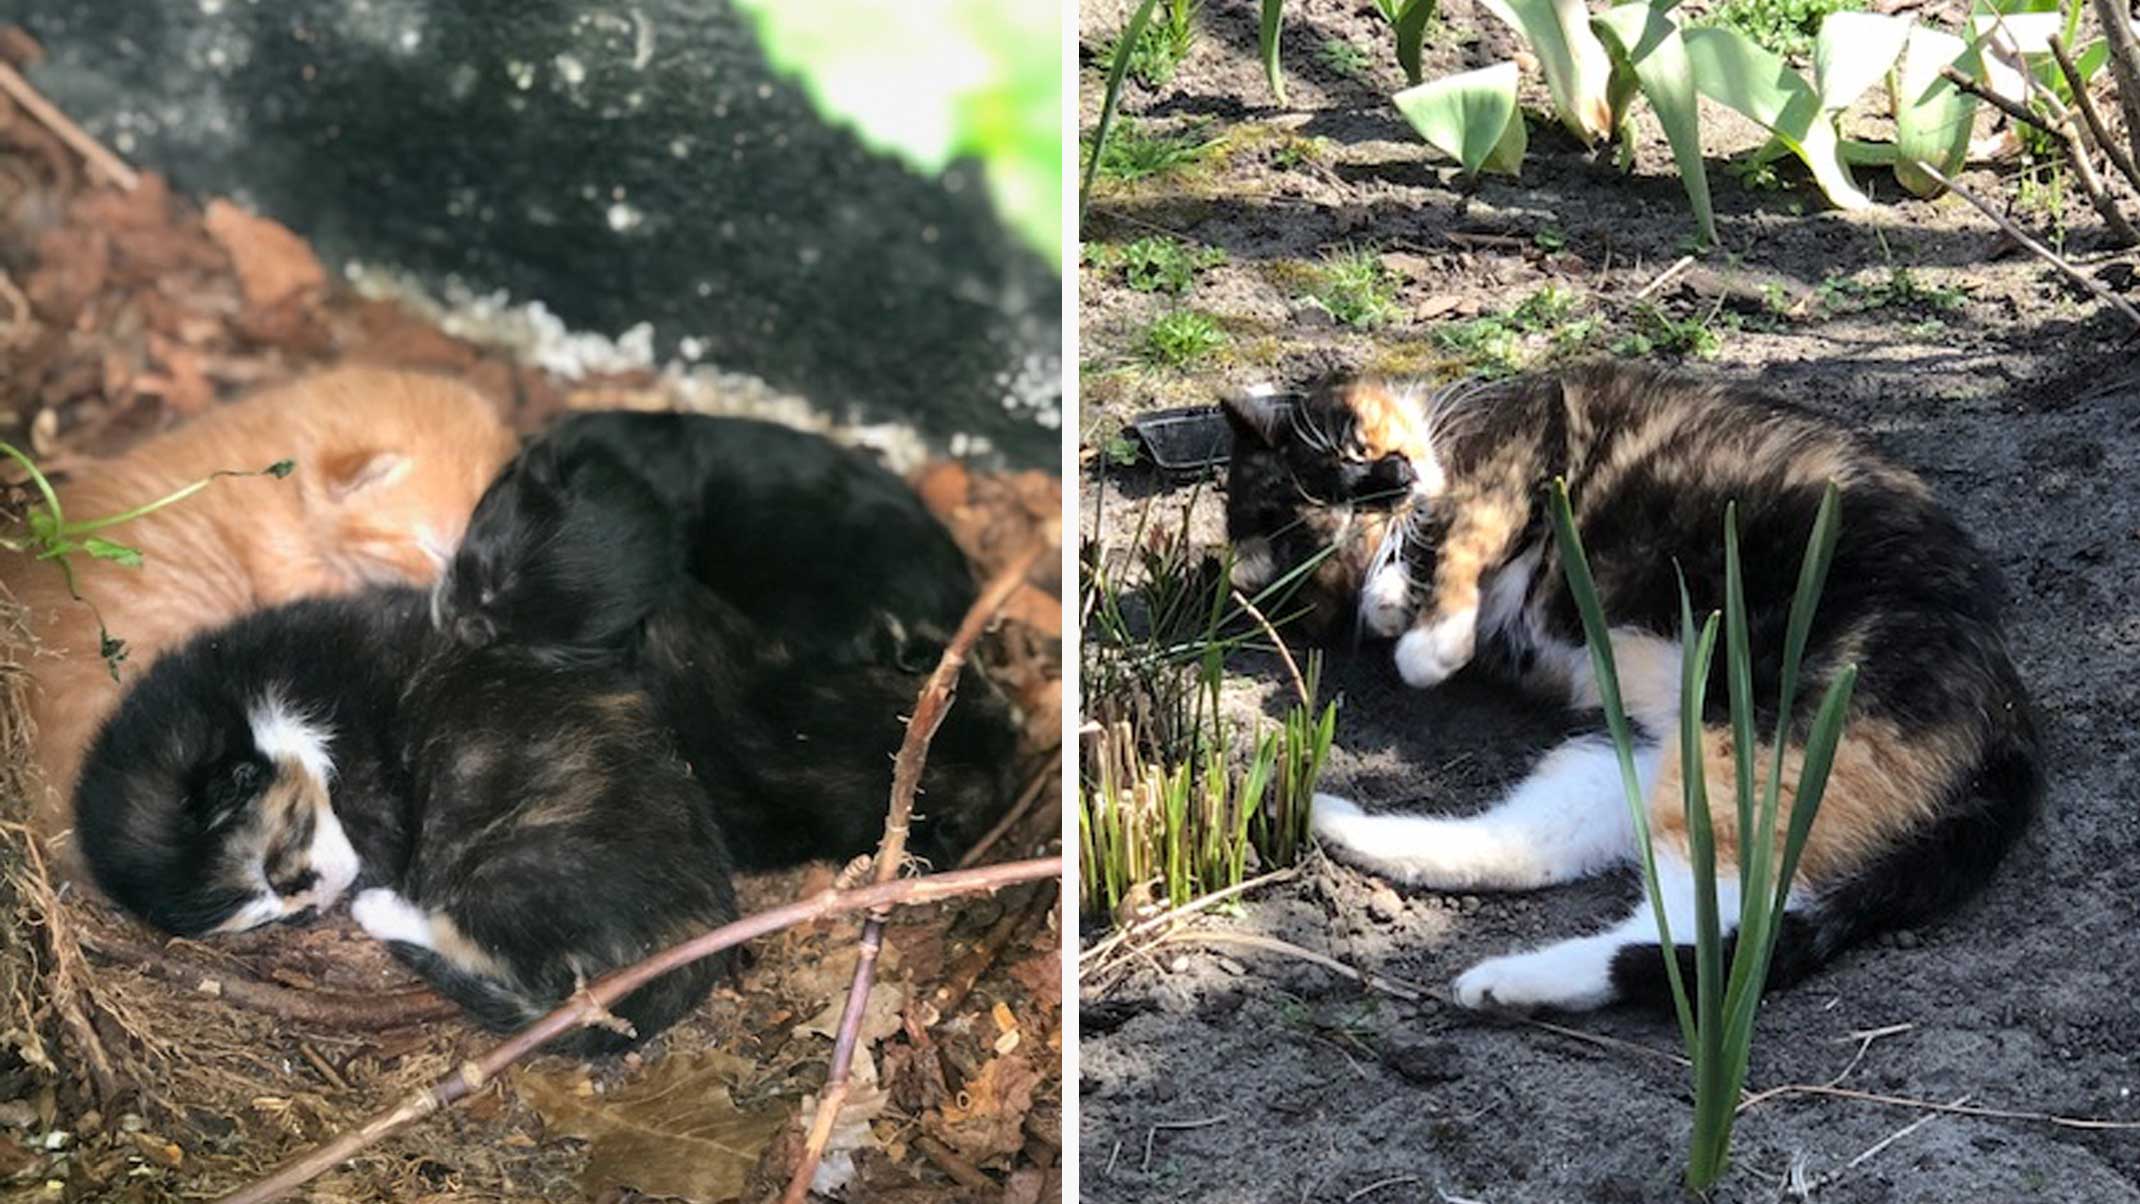 Anne found a litter of kittens in her garden – Part 1